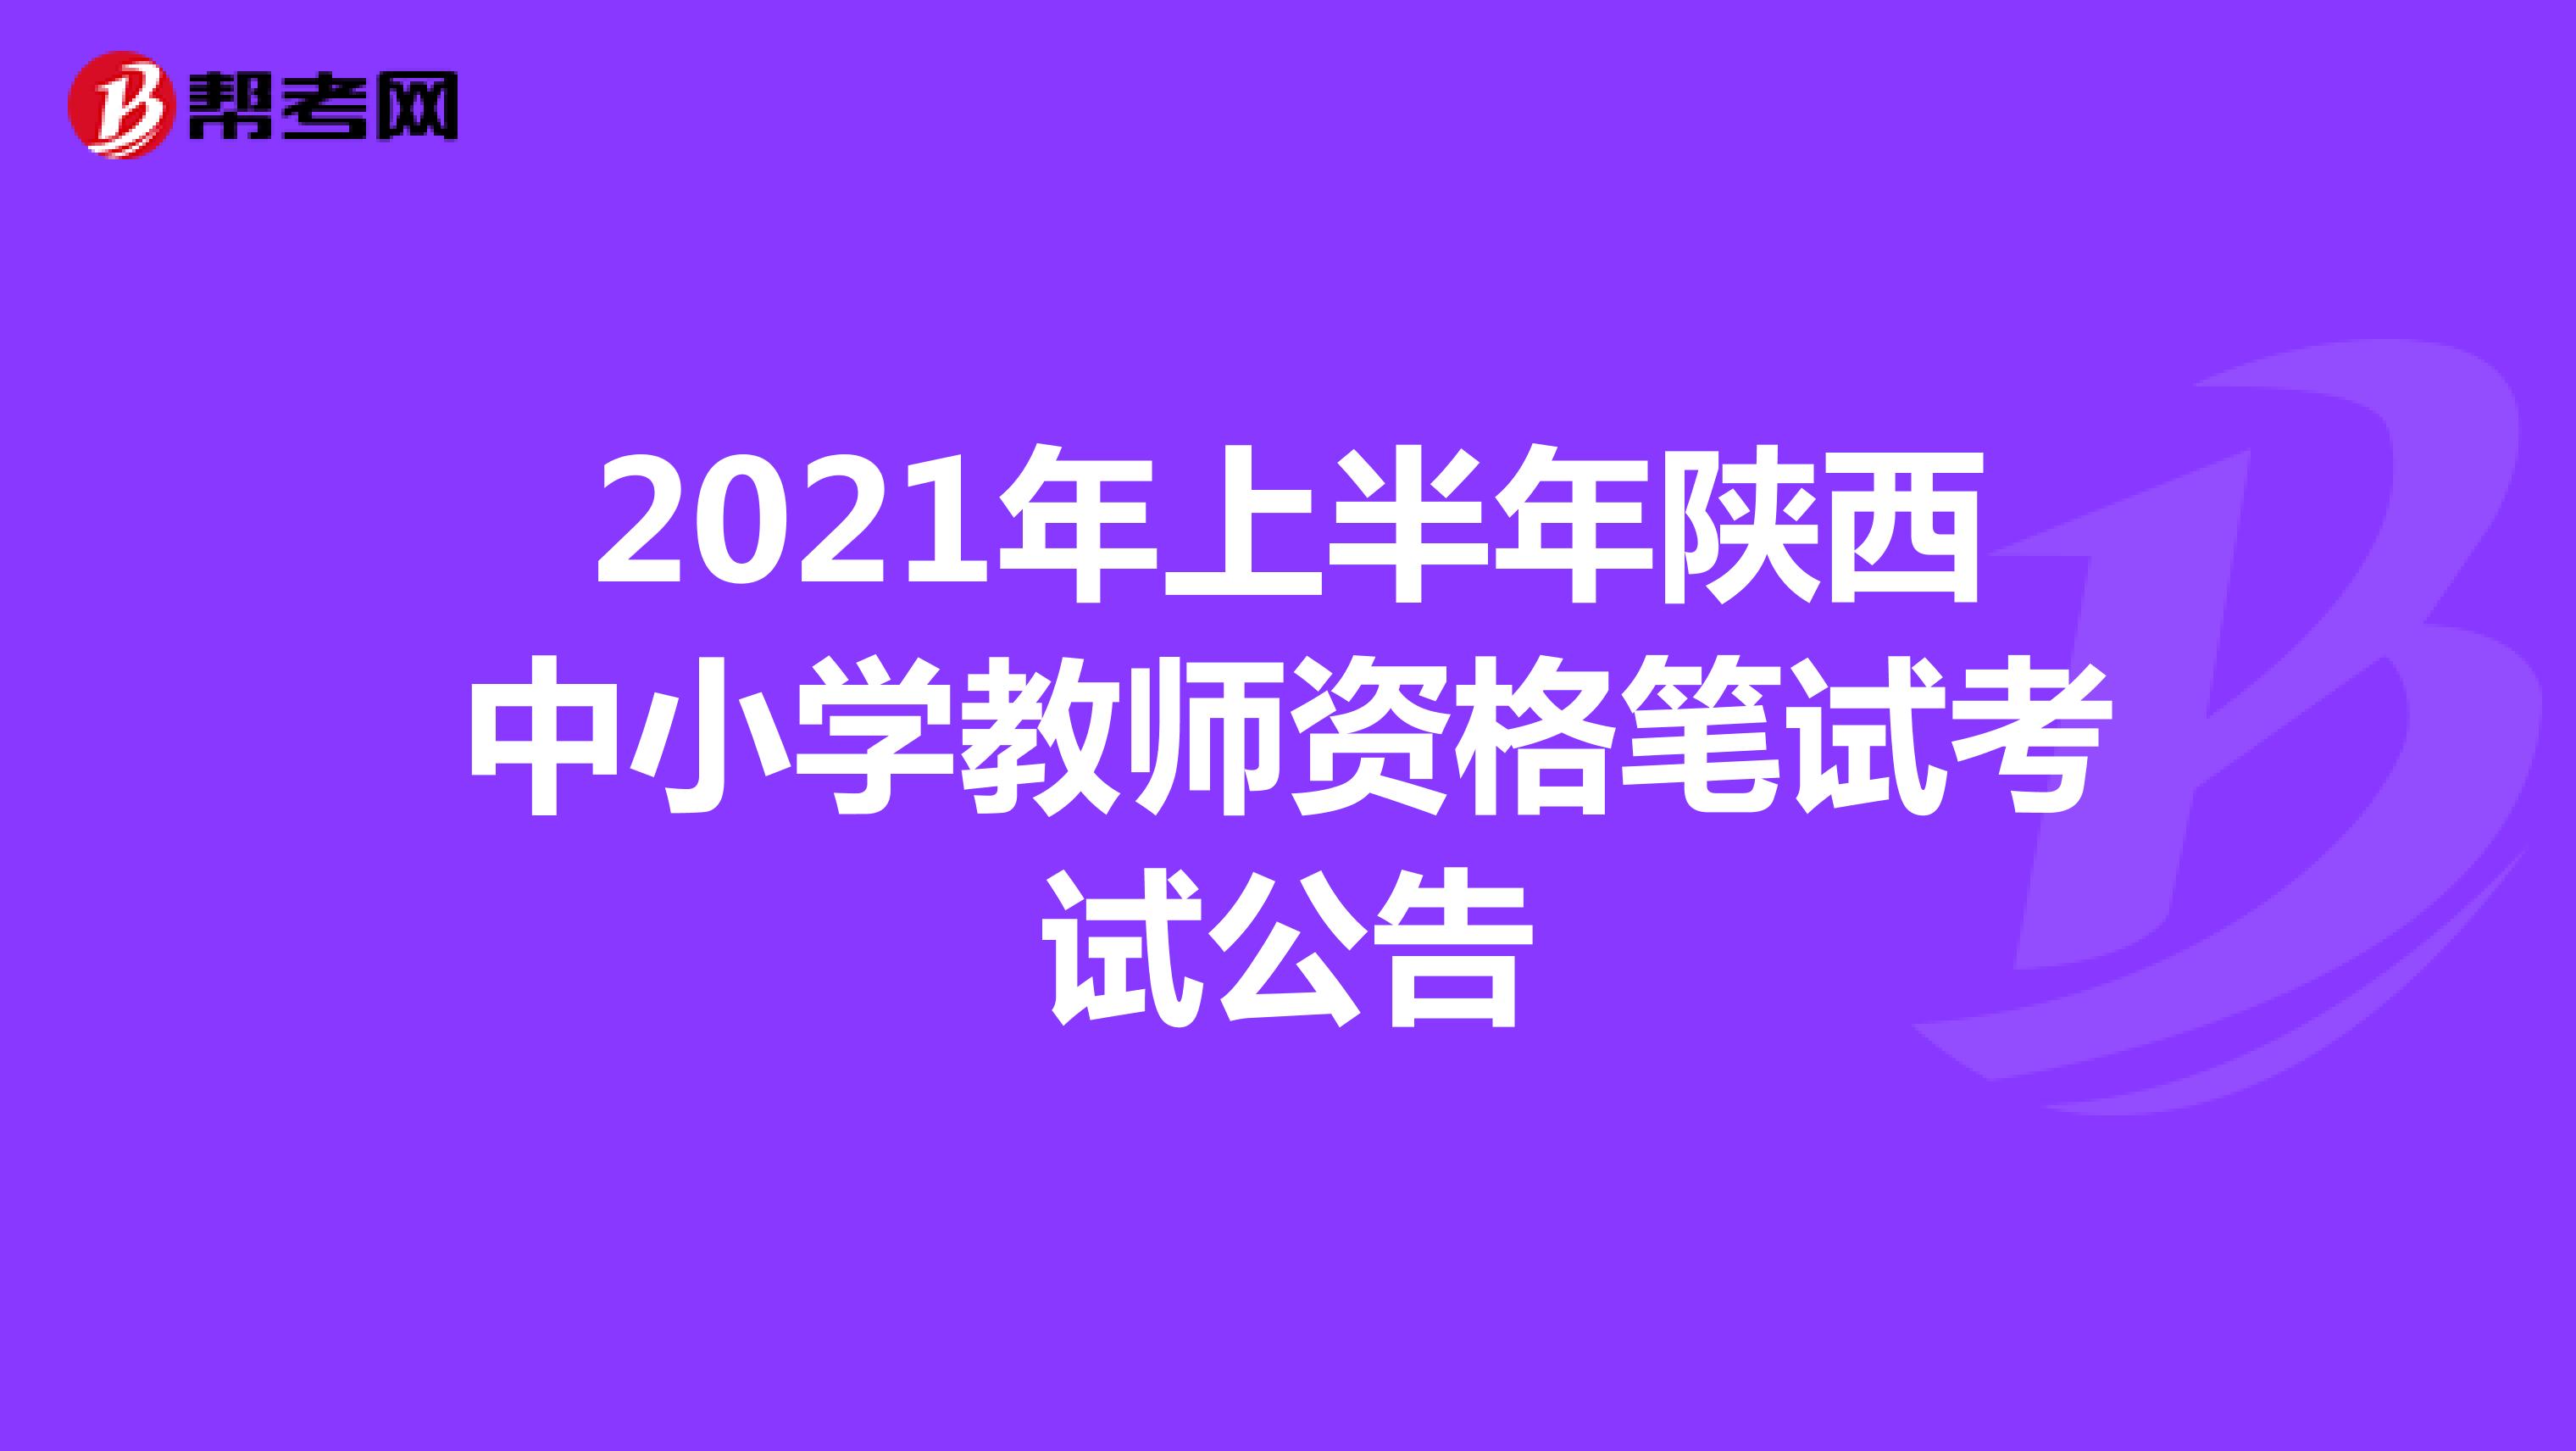 2021年上半年陕西中小学教师资格笔试考试公告